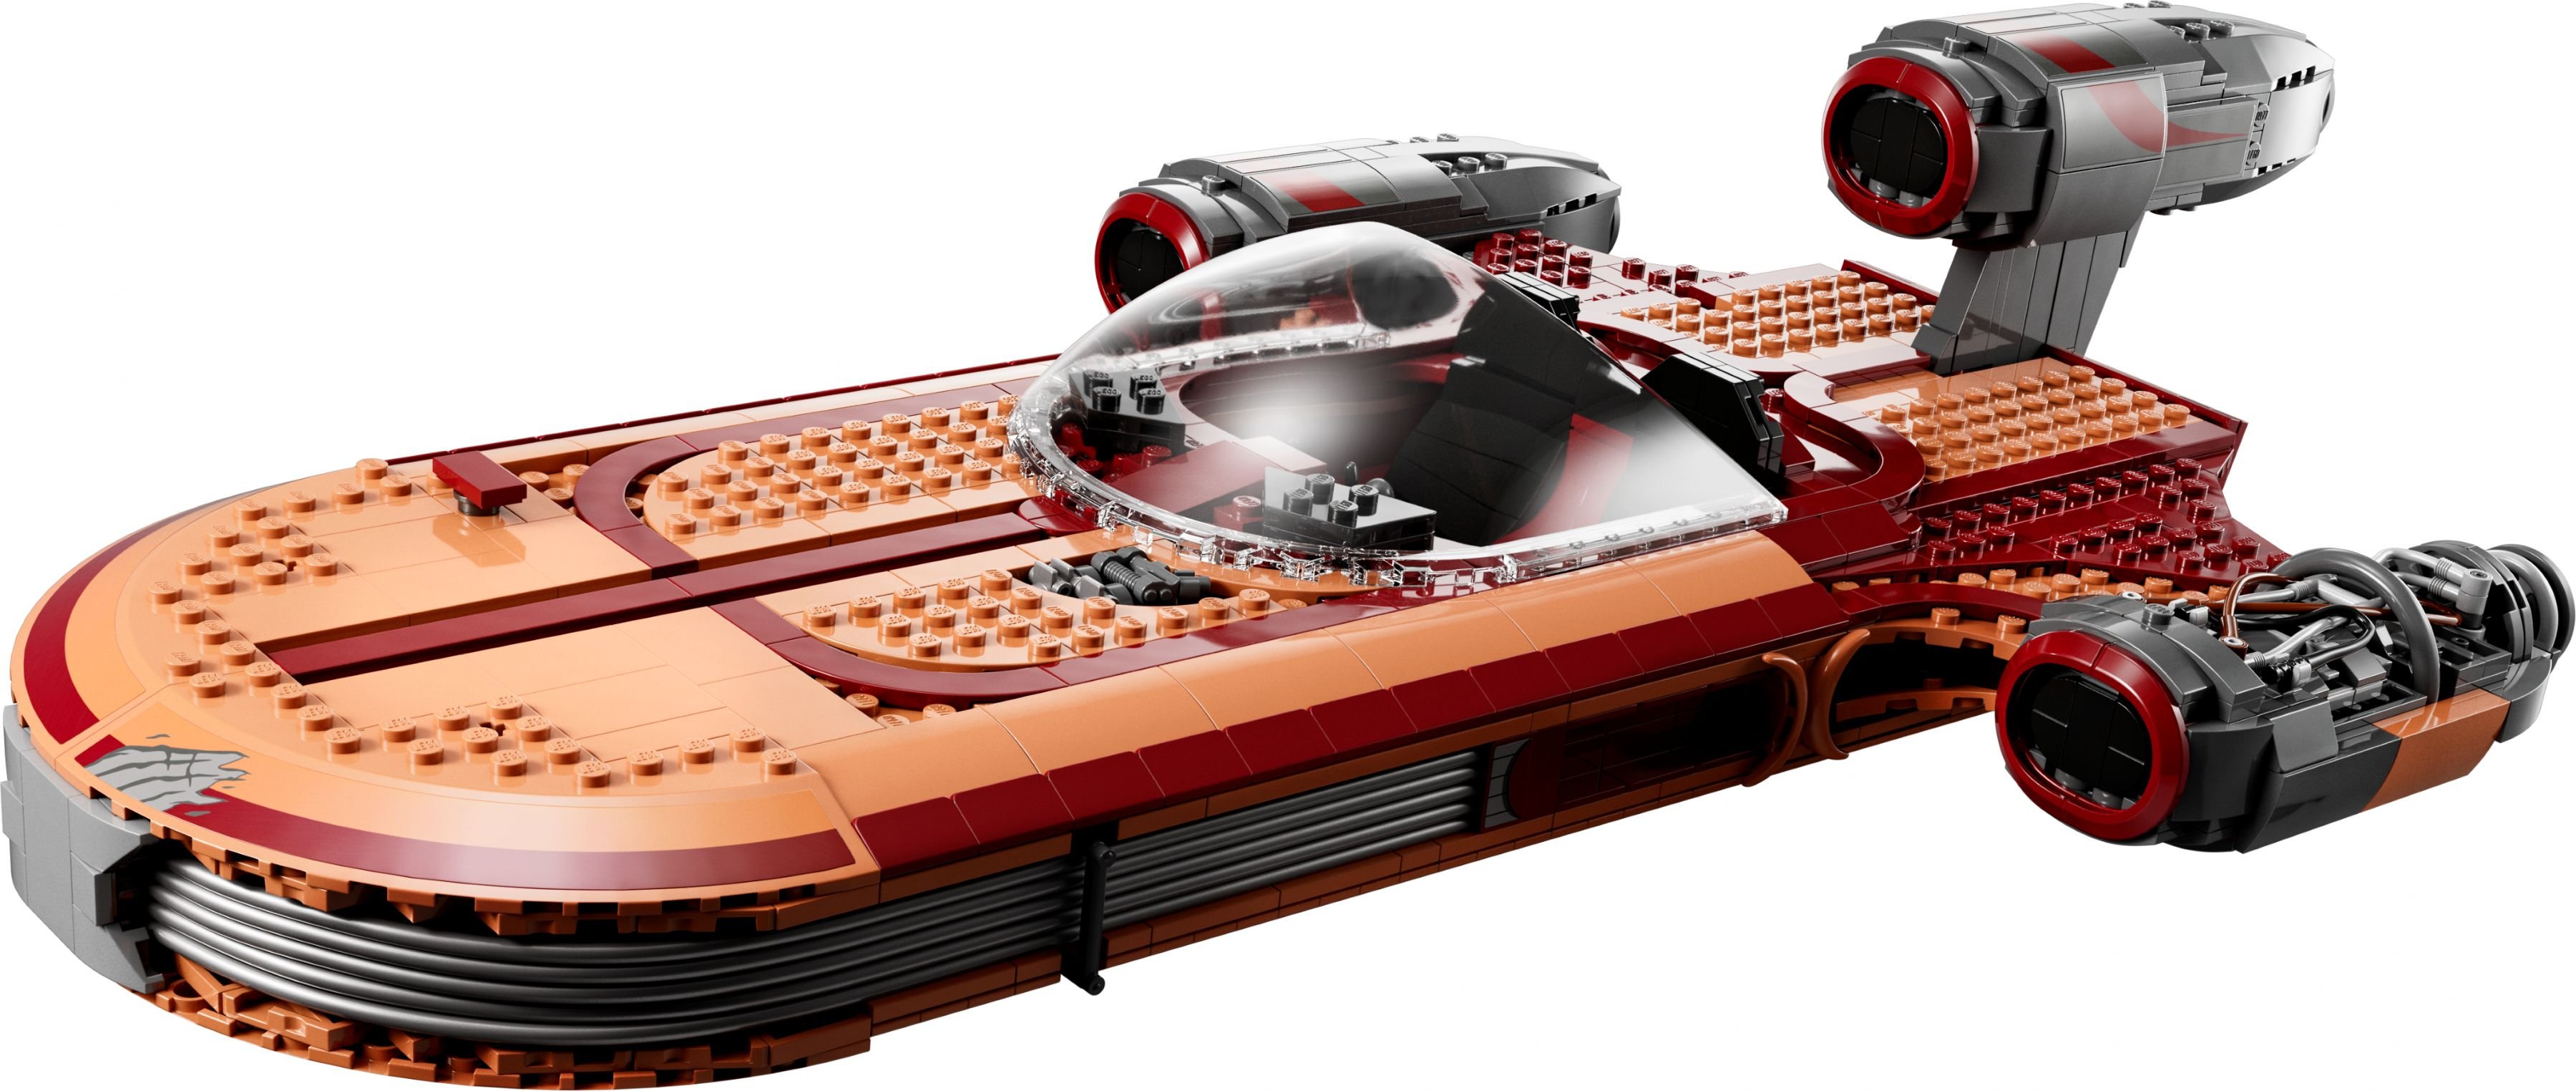 LEGO Star Wars 75341 Luke Skywalker’s Landspeeder™ LEGO_75341_alt3.jpg